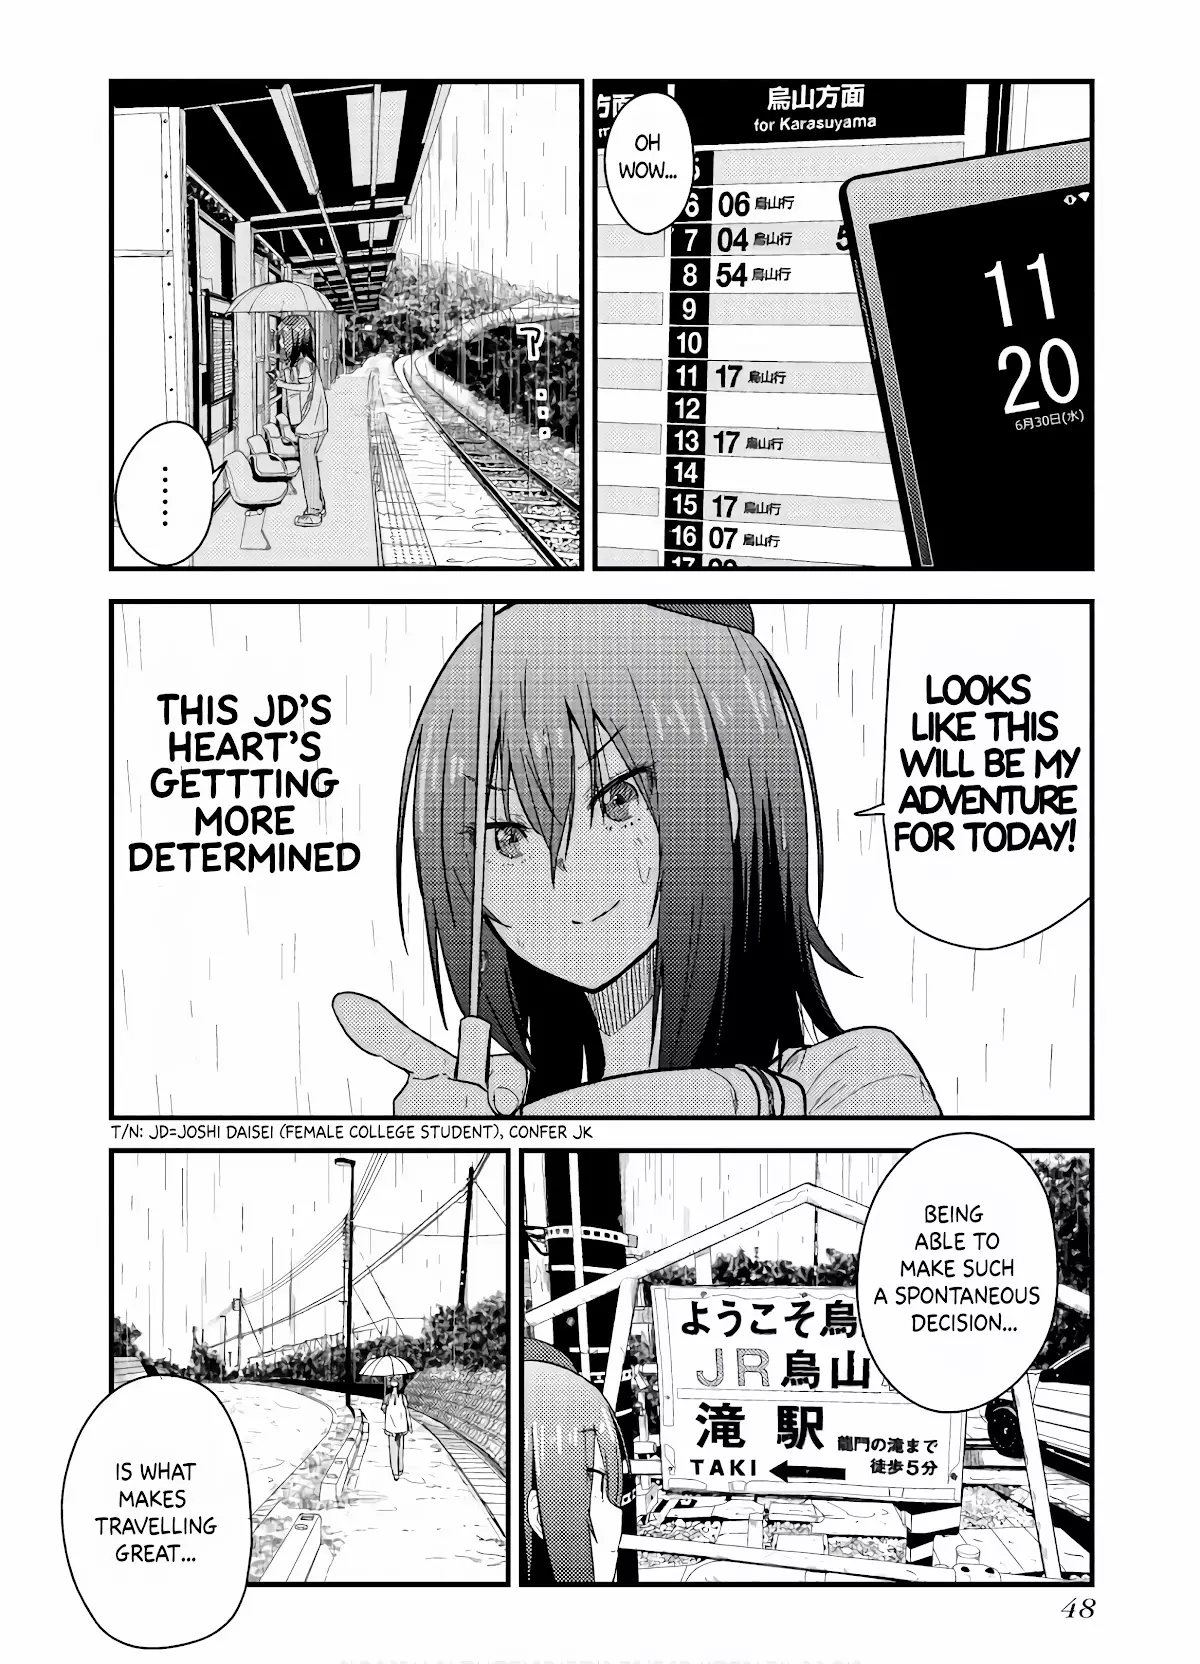 Zatsu Tabi: That's Journey - 6 page 8-f0d07999